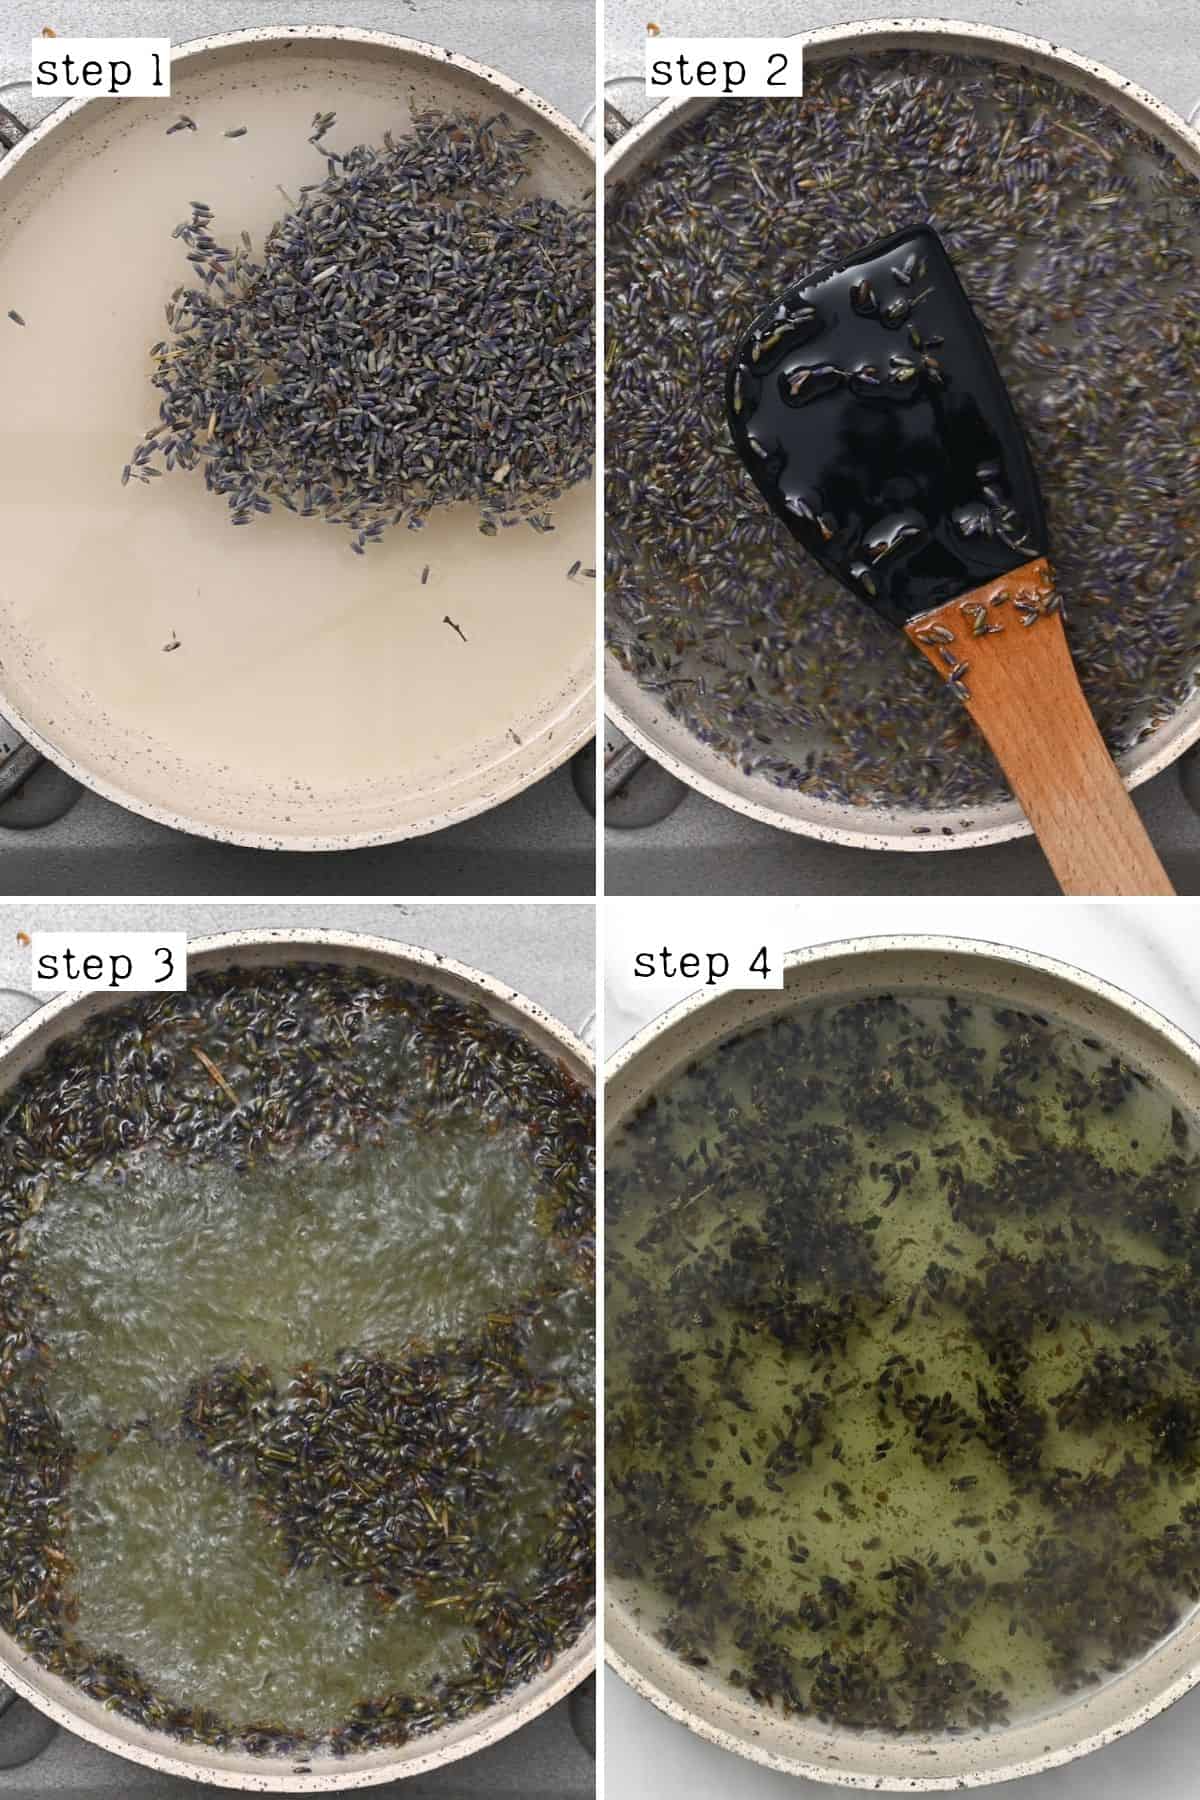 Steps for making lavender syrup